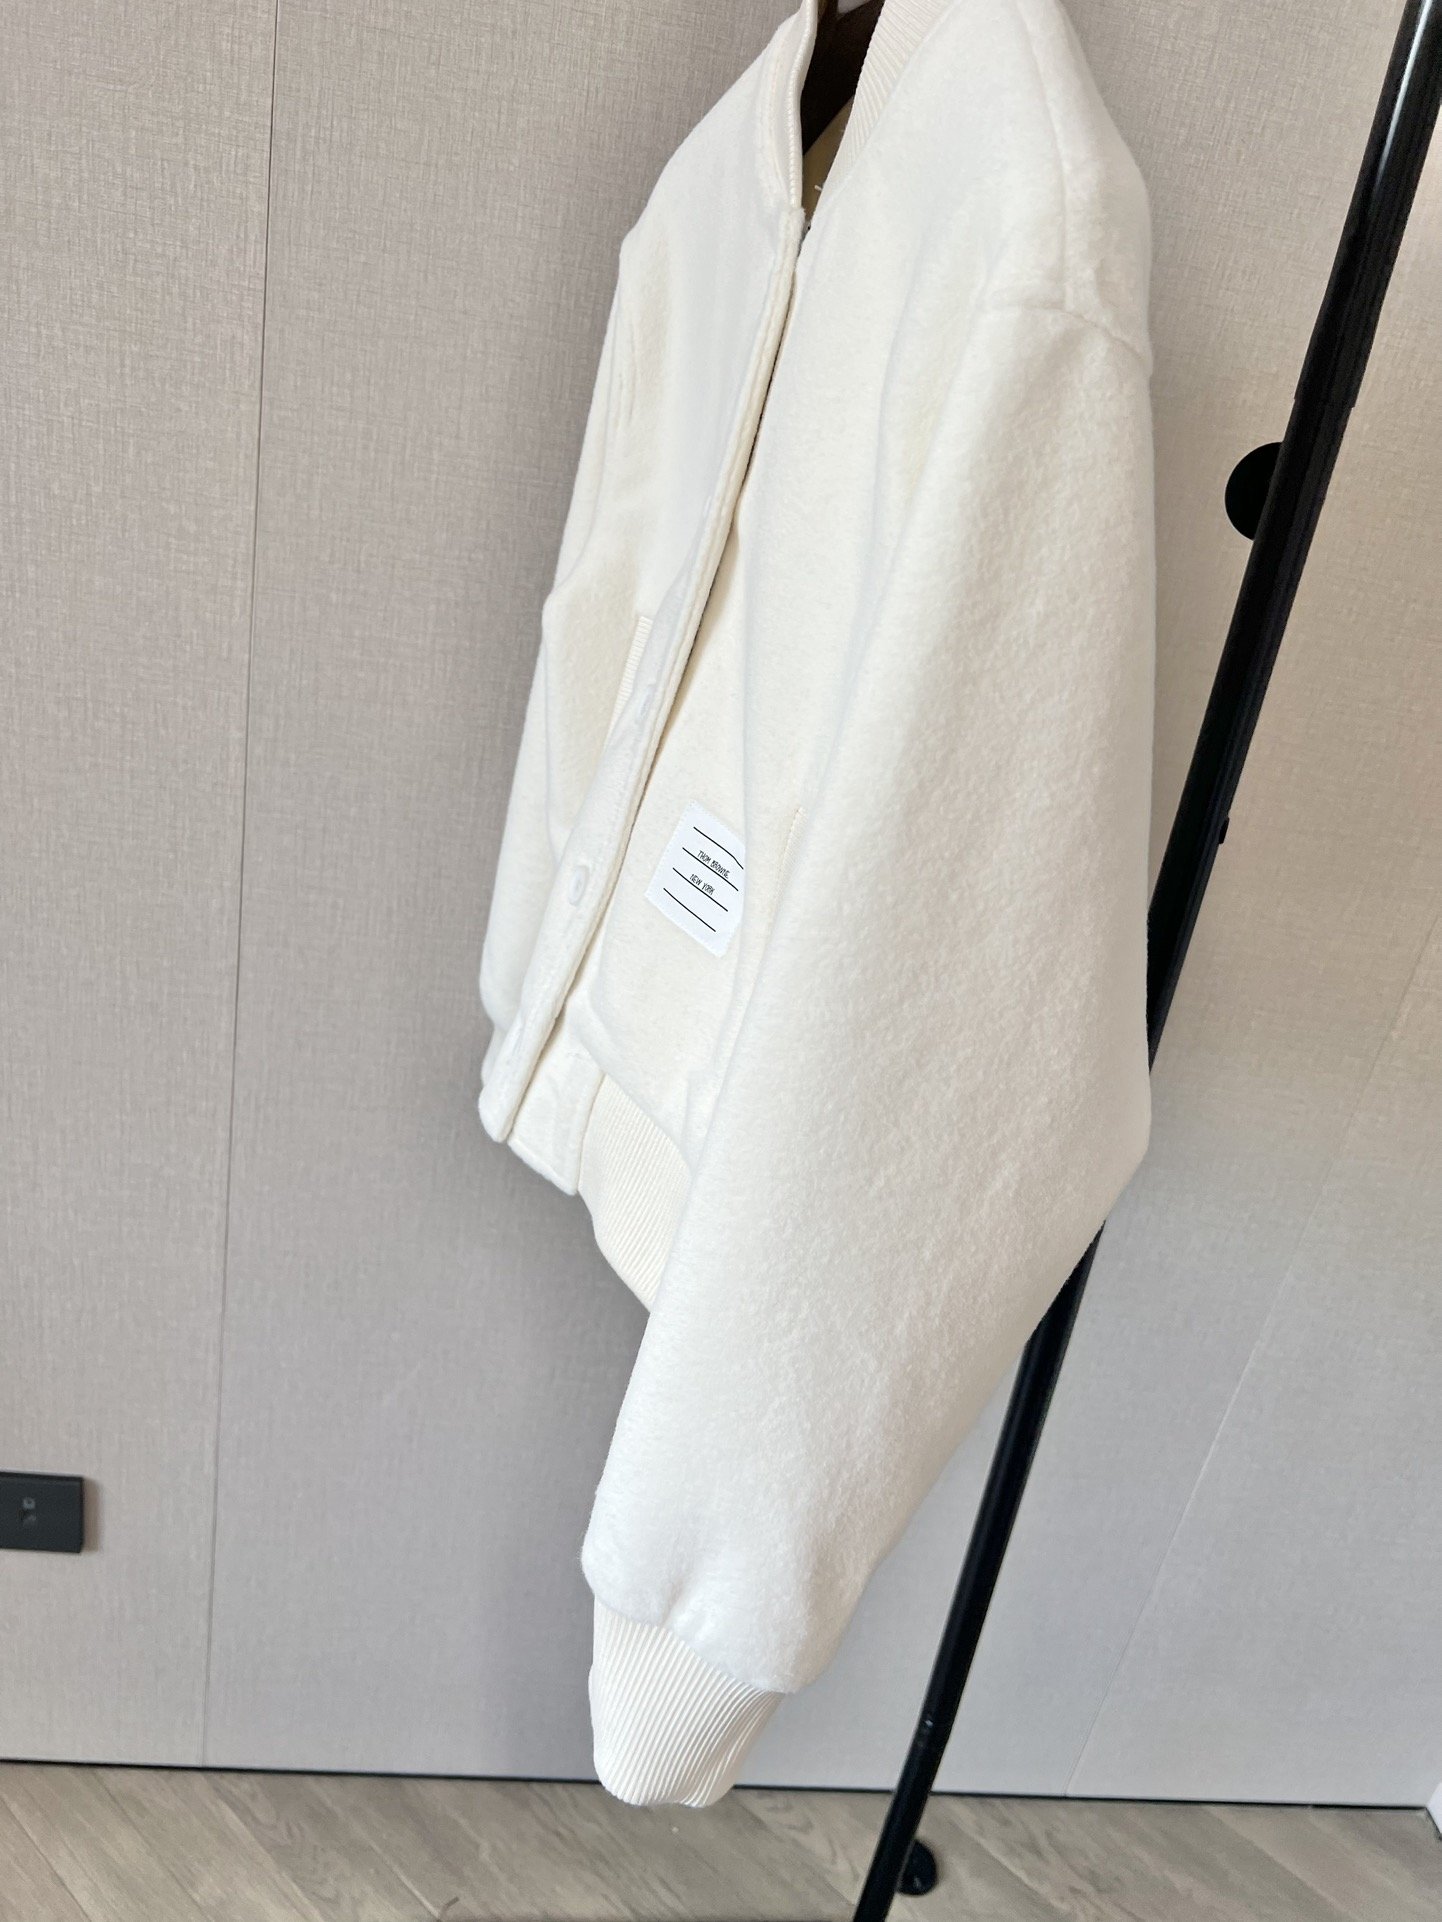 ThomBr*me23秋冬系列好看的休闲棒球服夹克经典的灰/白色搭配三色织都是定制的辅料配件羊毛呢棉服质